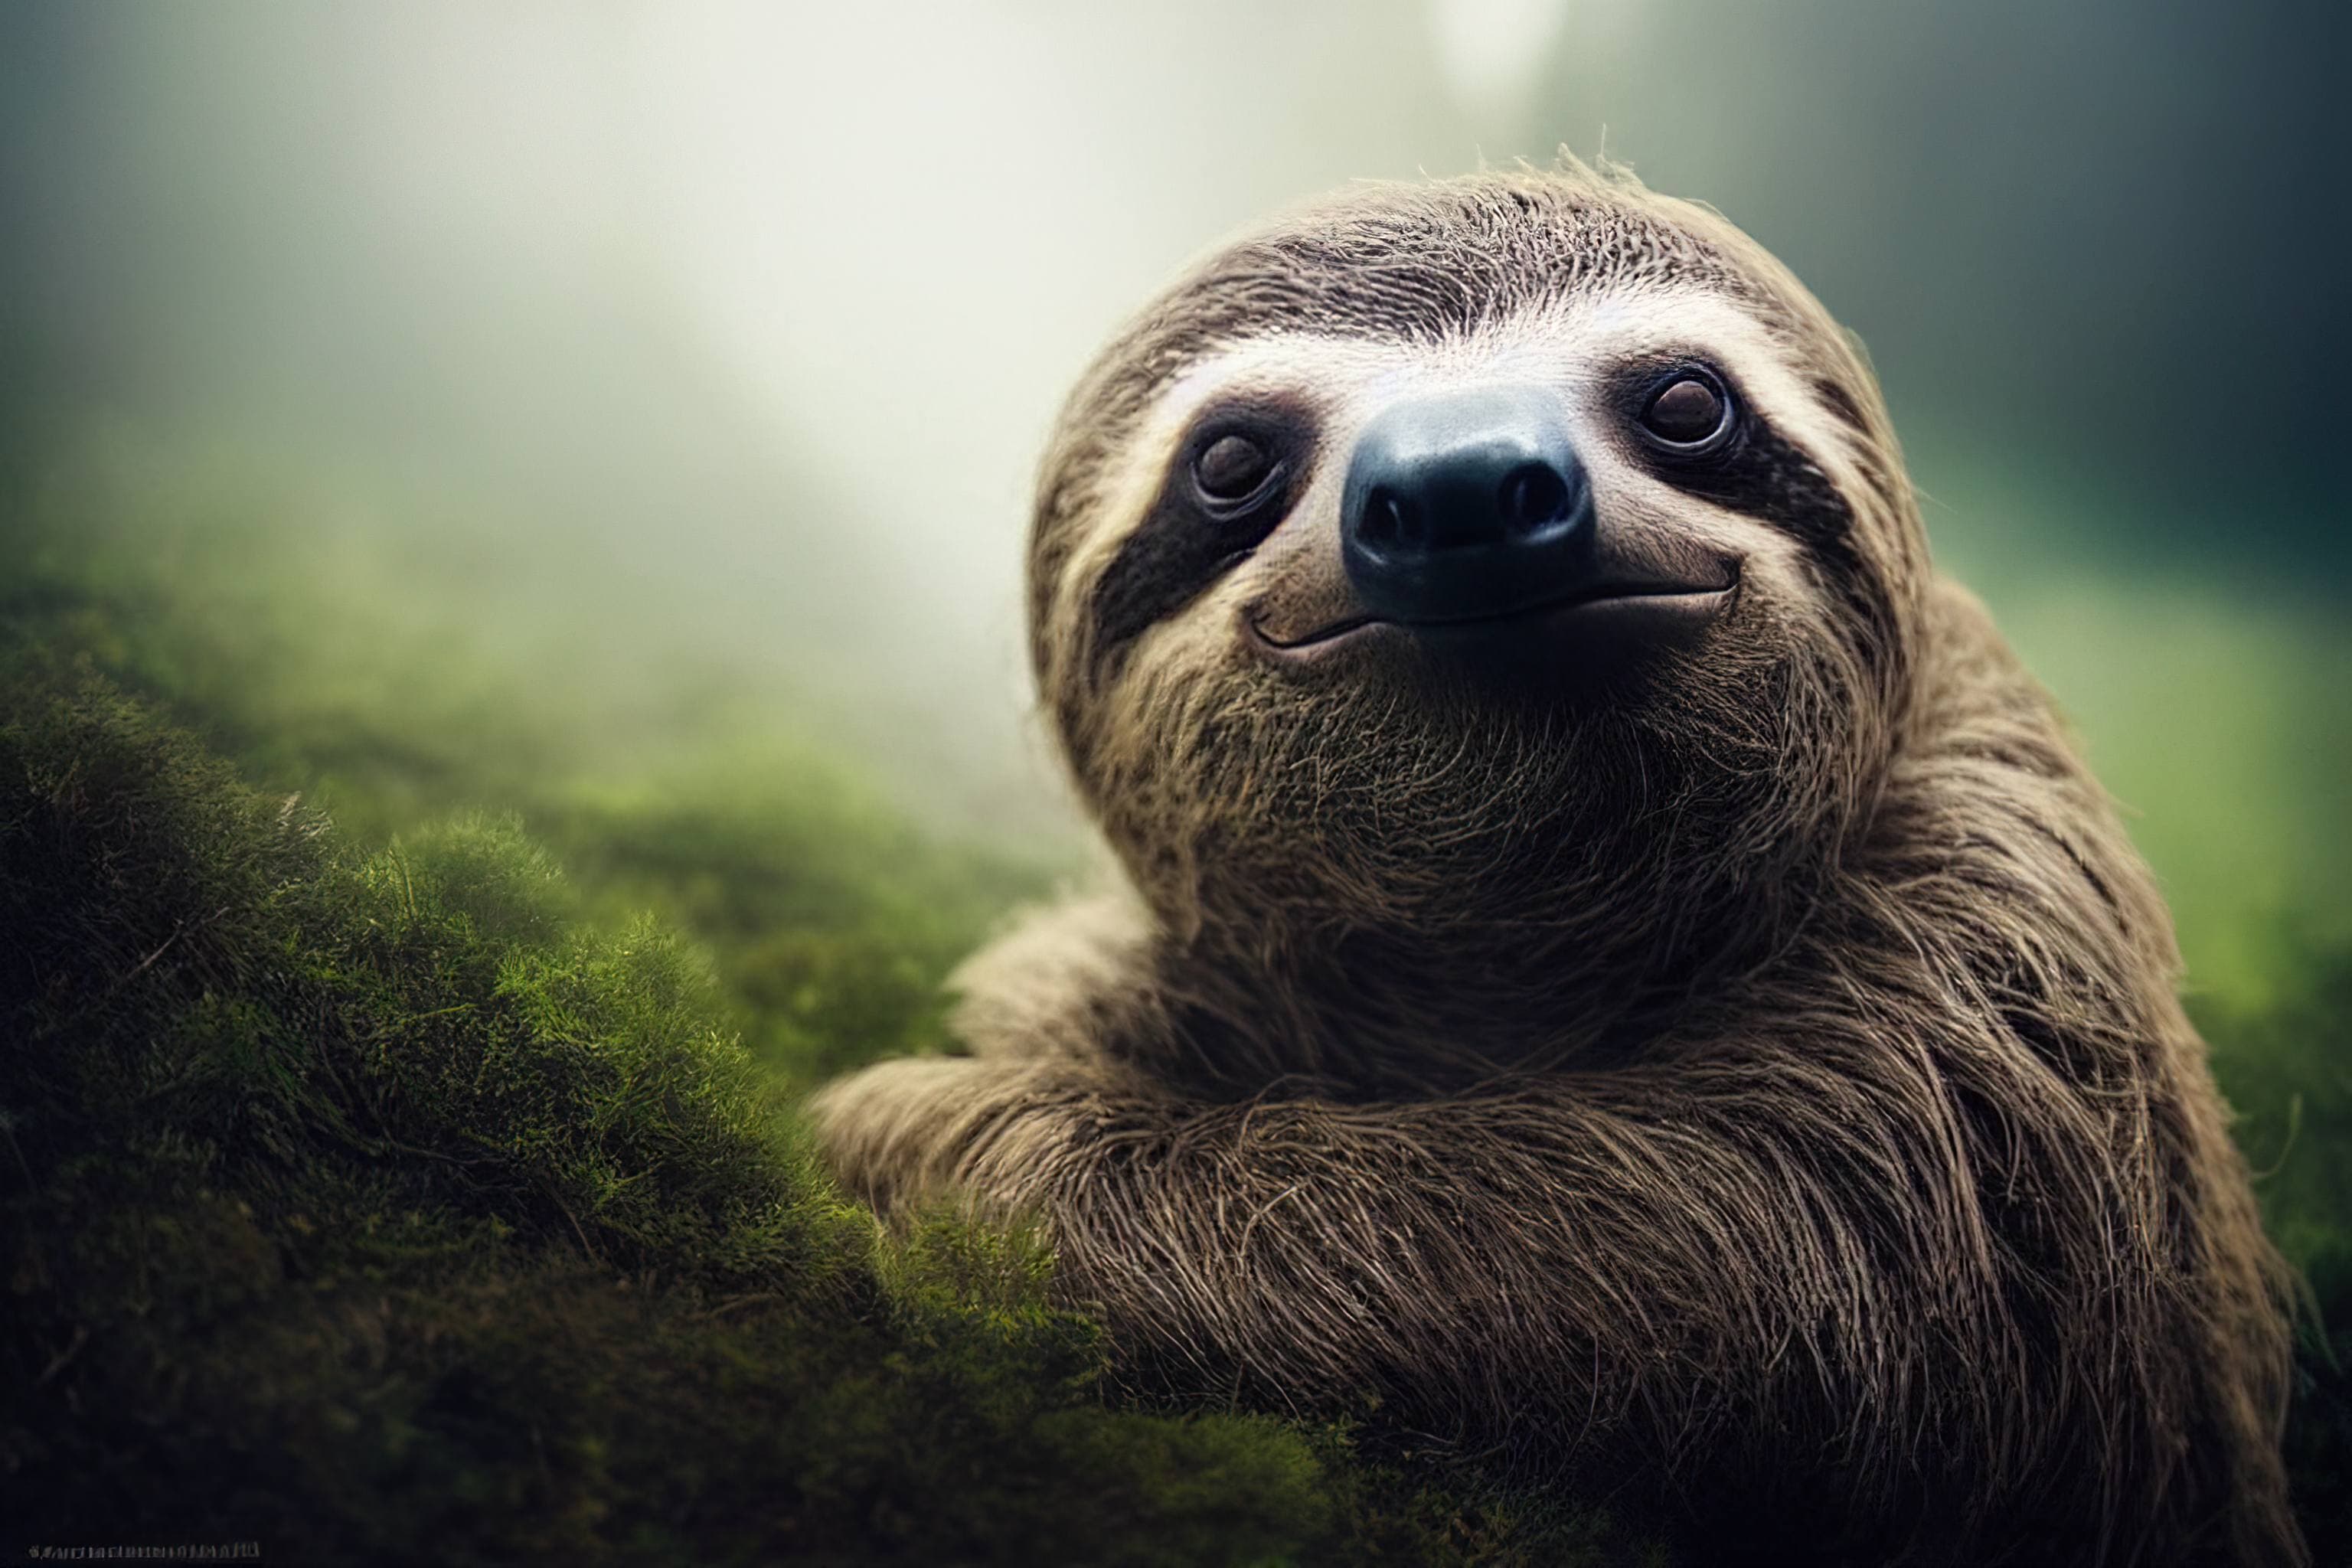 A sloth looking at the camera